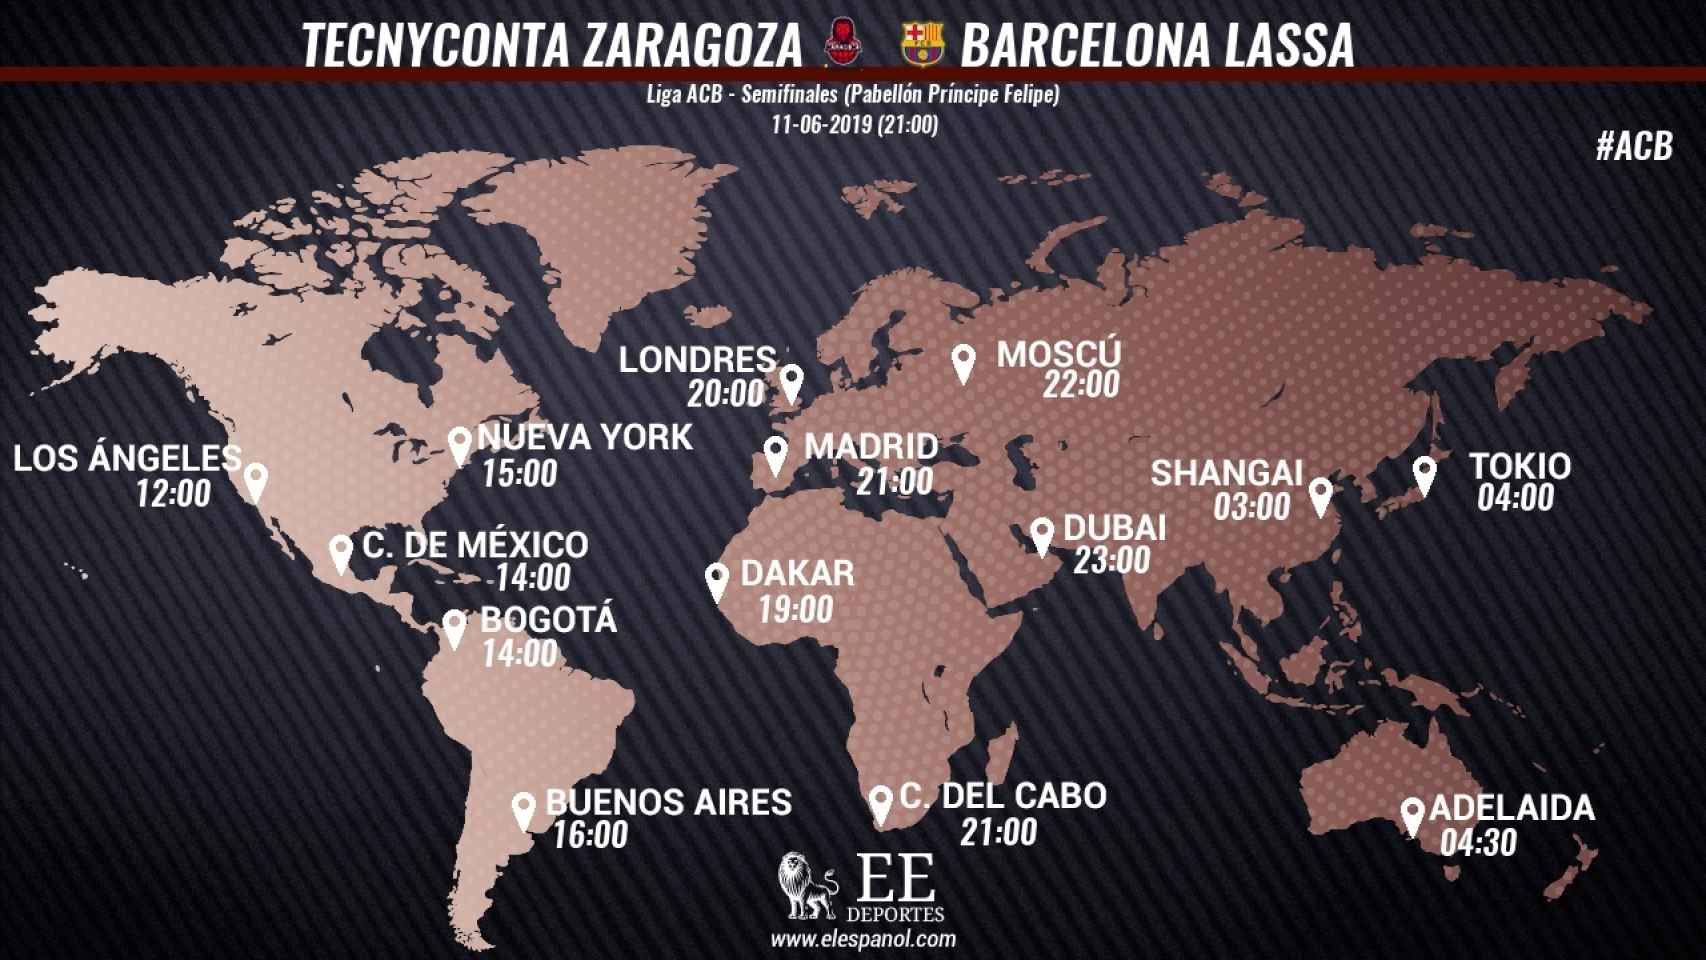 Horario internacional del Tecnyconta Zaragoza - Barcelona Lassa